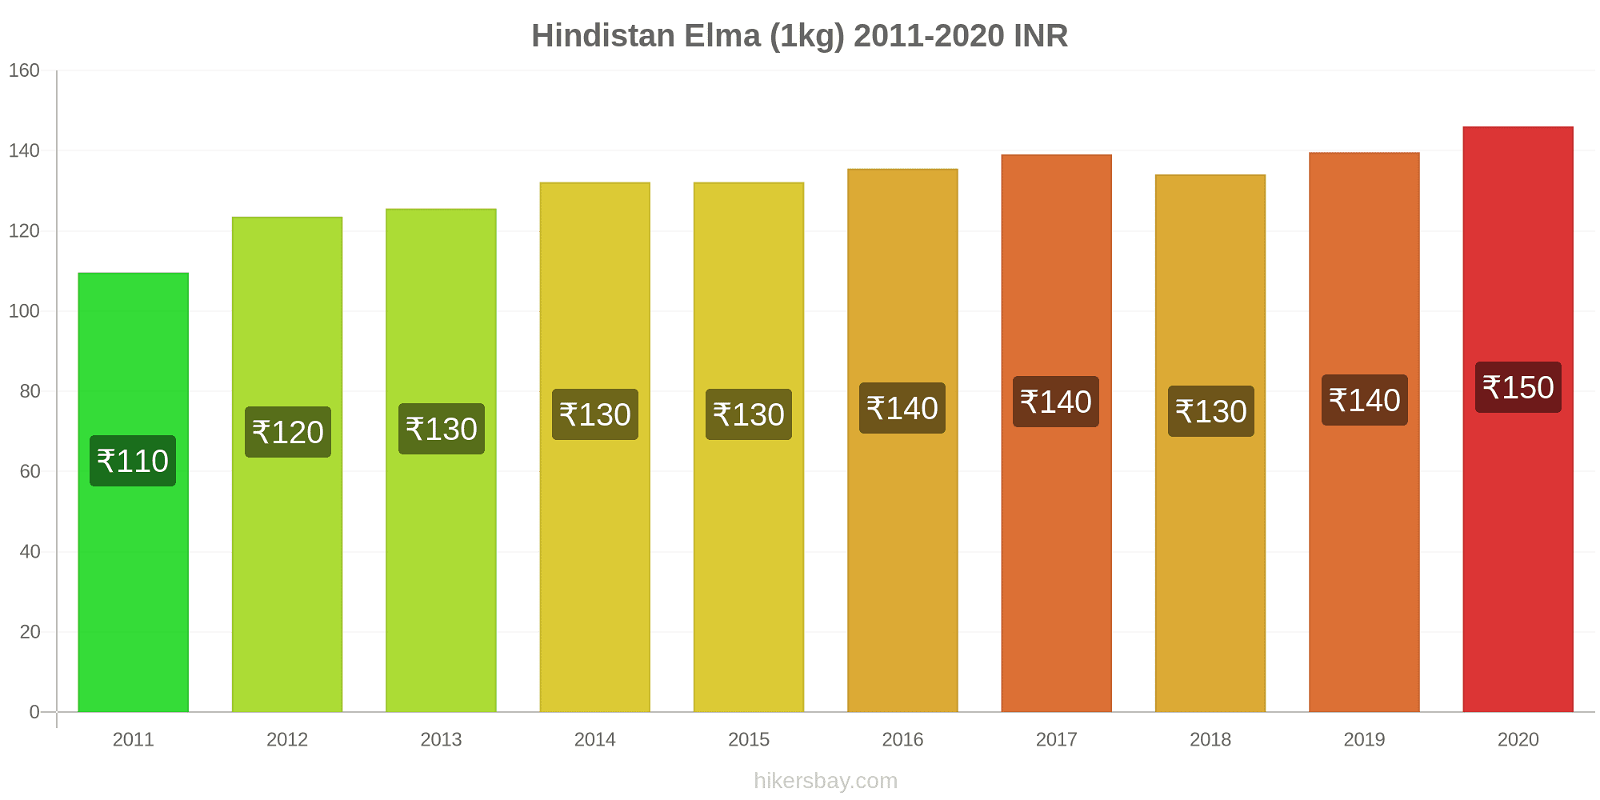 Hindistan fiyat değişiklikleri Elma (1kg) hikersbay.com